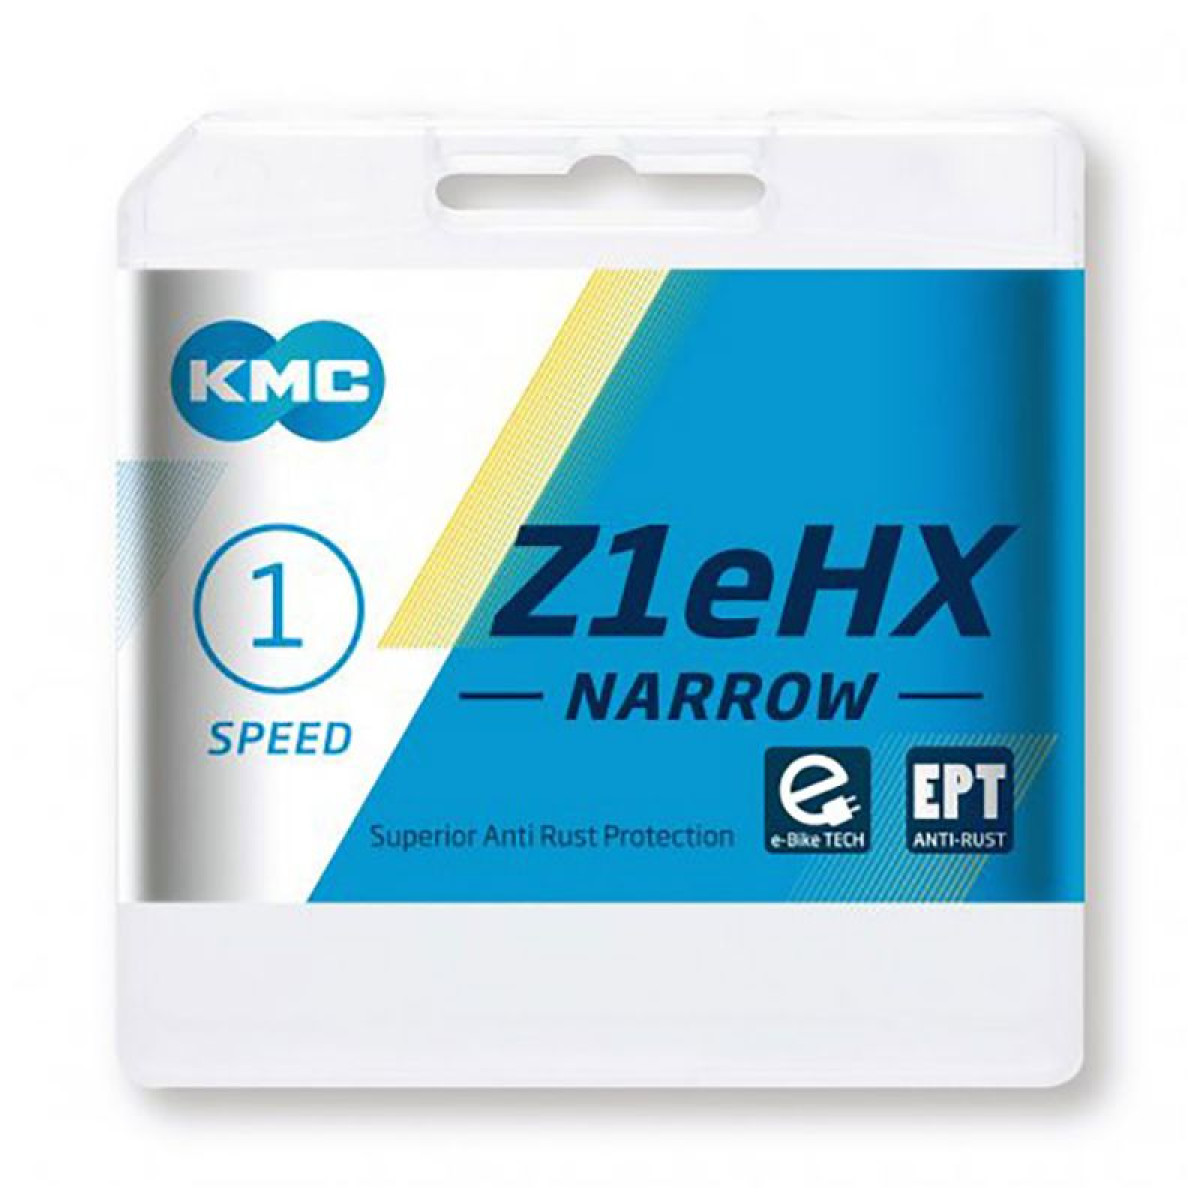 KMC Z1eHX Narrow EPT grandinė / 1 pavaros / Silver